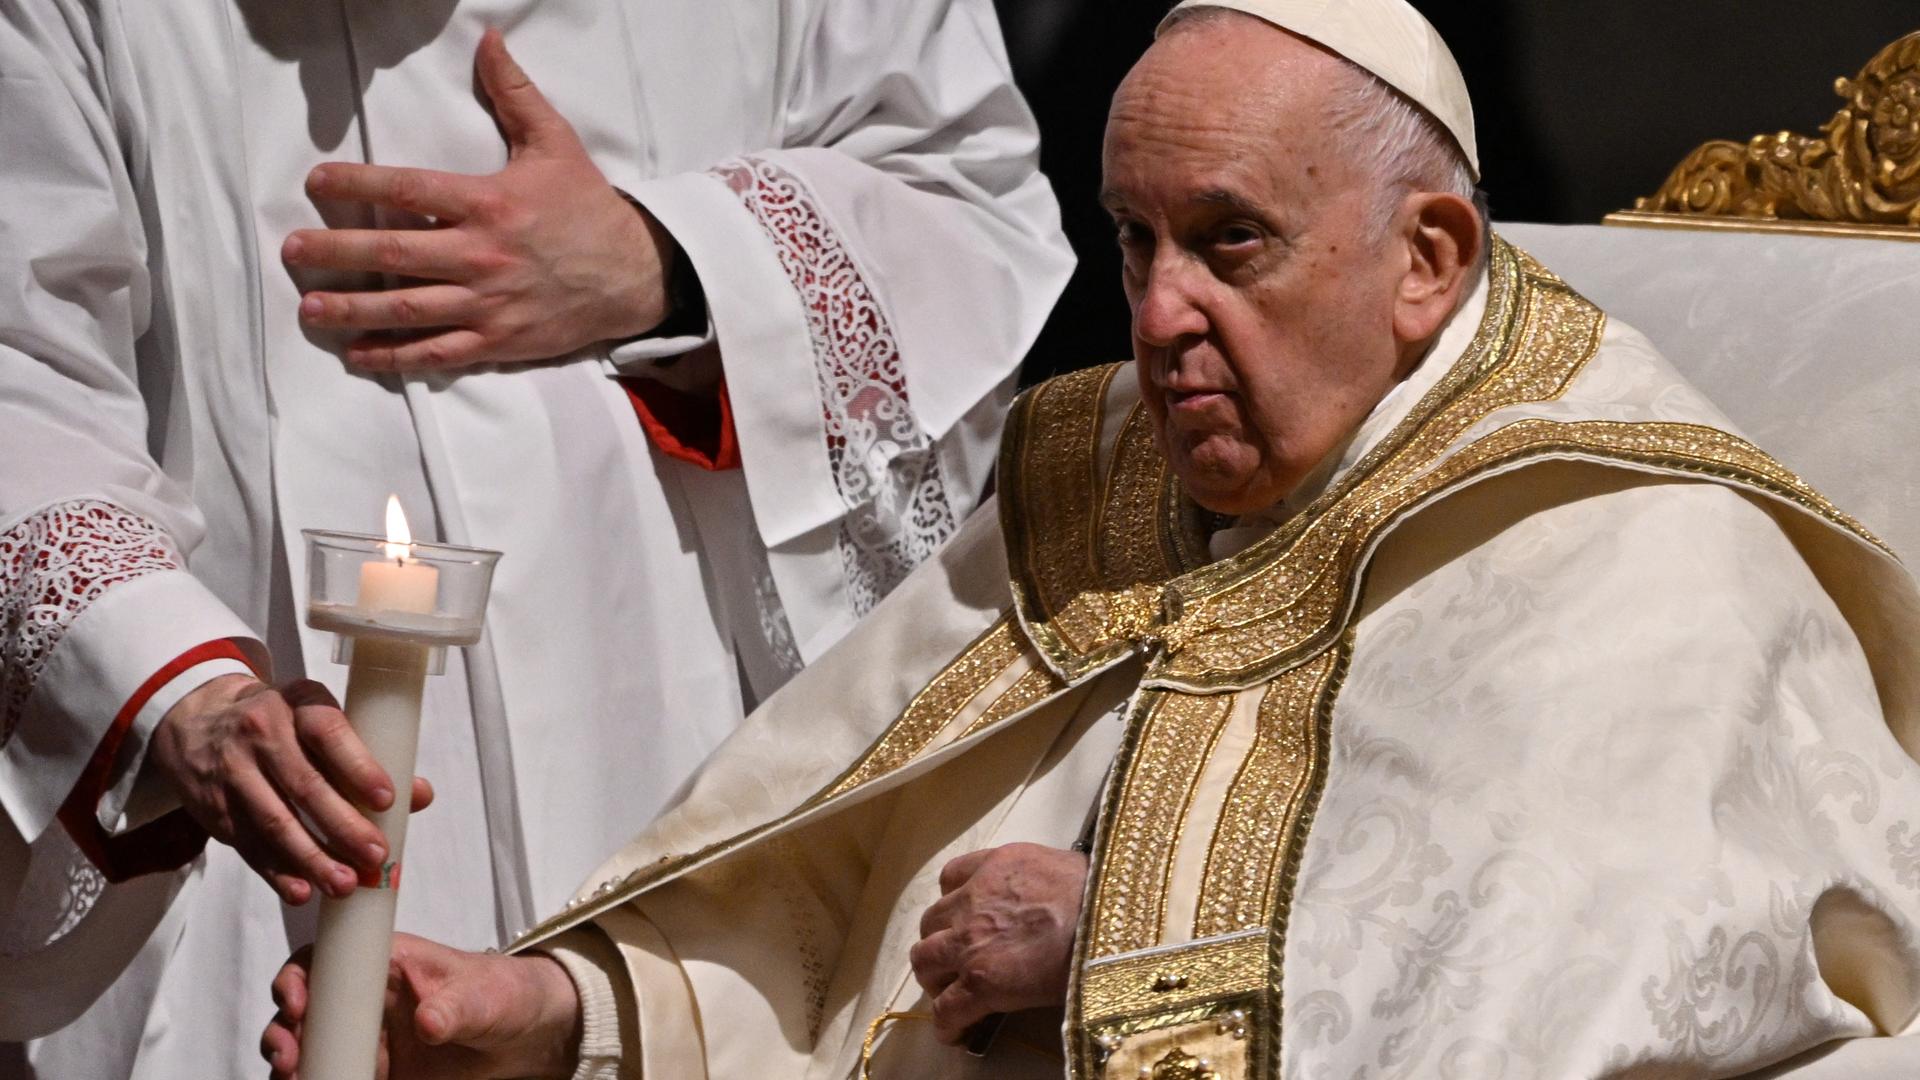 Der Papst sitzt in einem Sessel und bekommt eine Kerze gereicht.